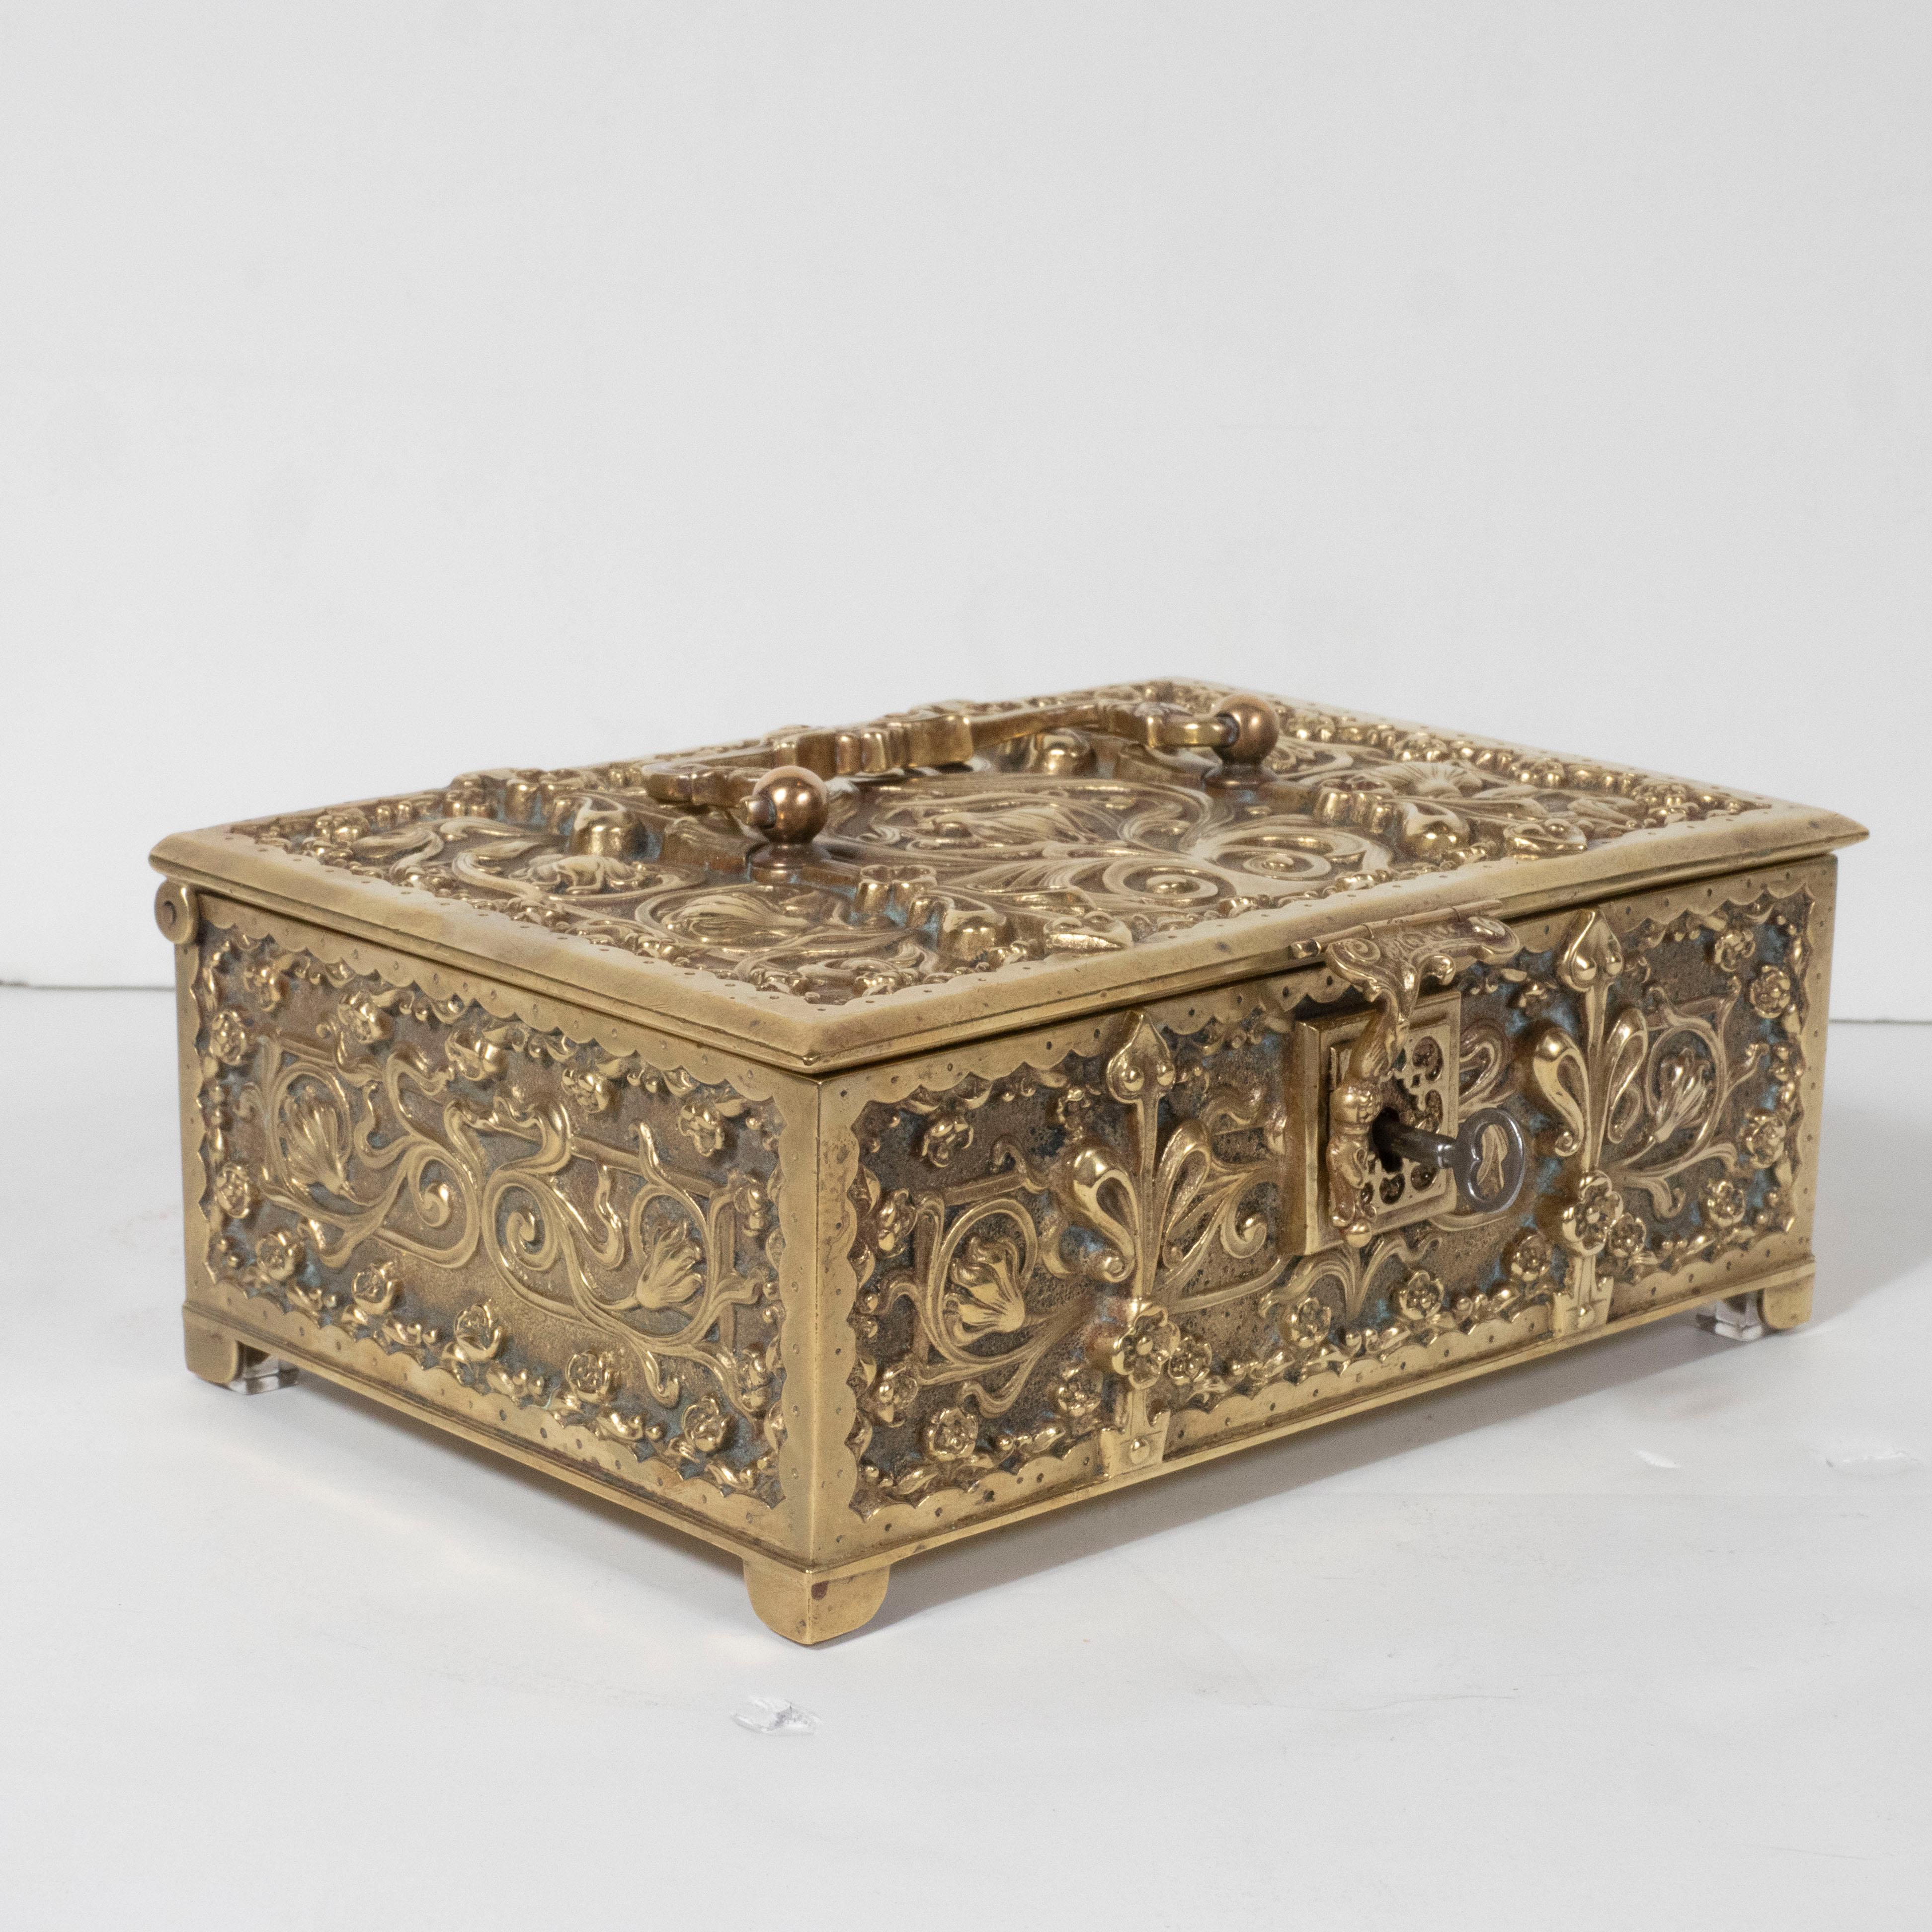 Early 20th Century Art Nouveau Brass Repoussé Box with Stylized Fleur-de-Lis and Foliate Motifs